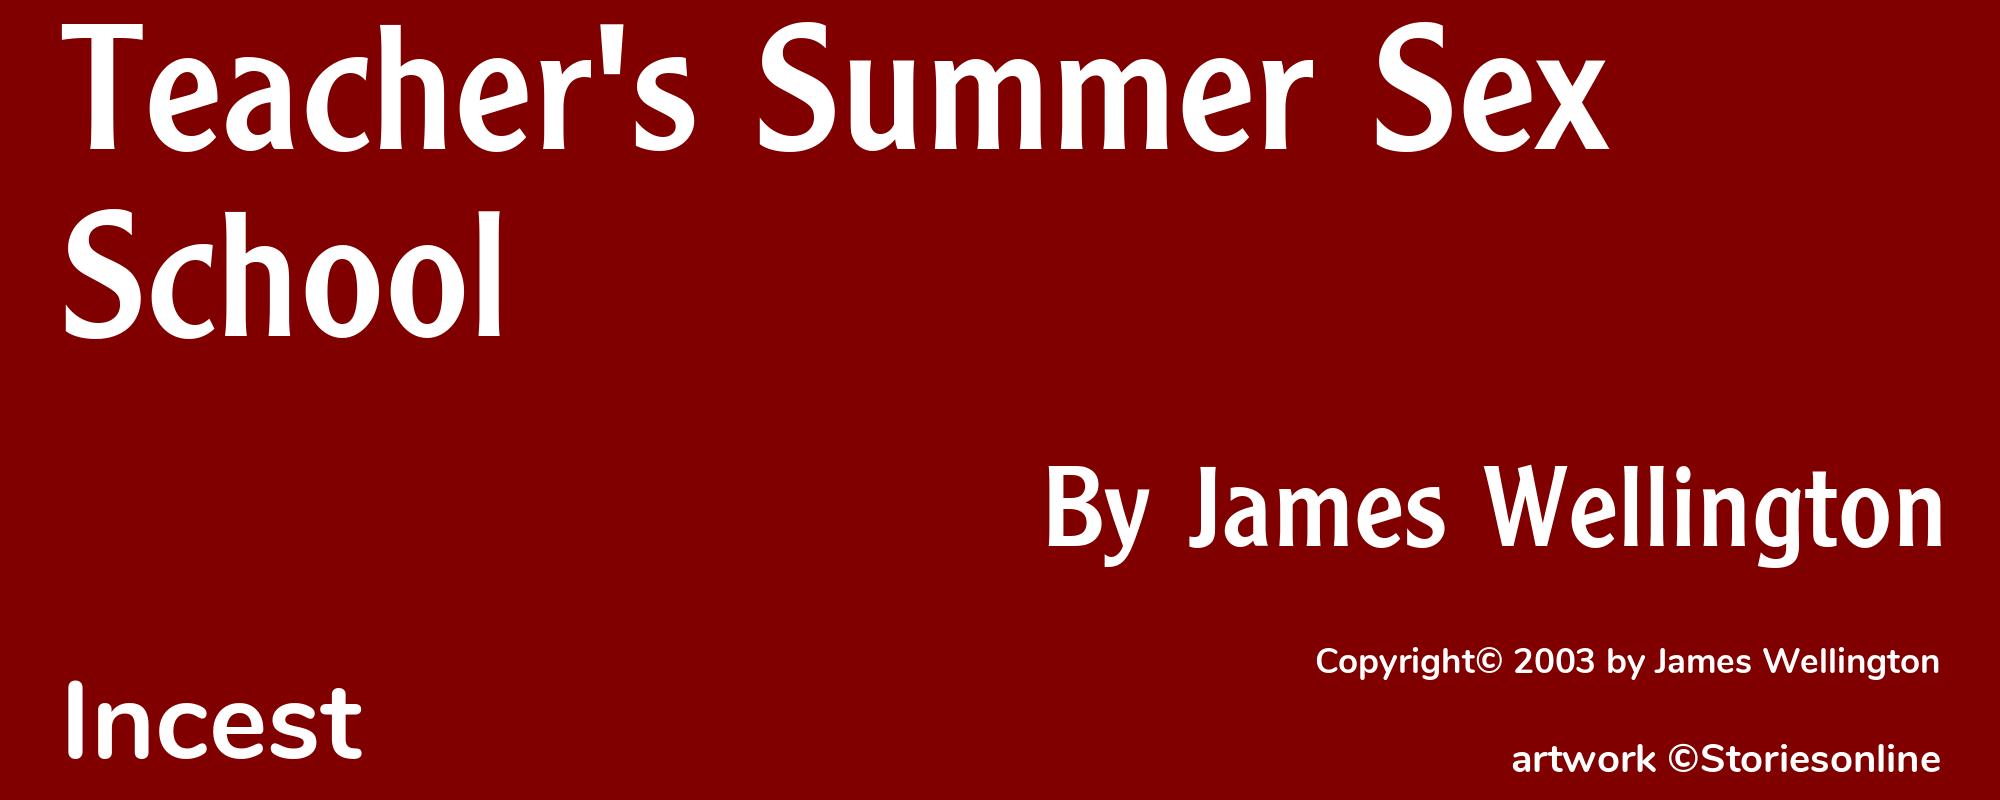 Teacher's Summer Sex School - Cover